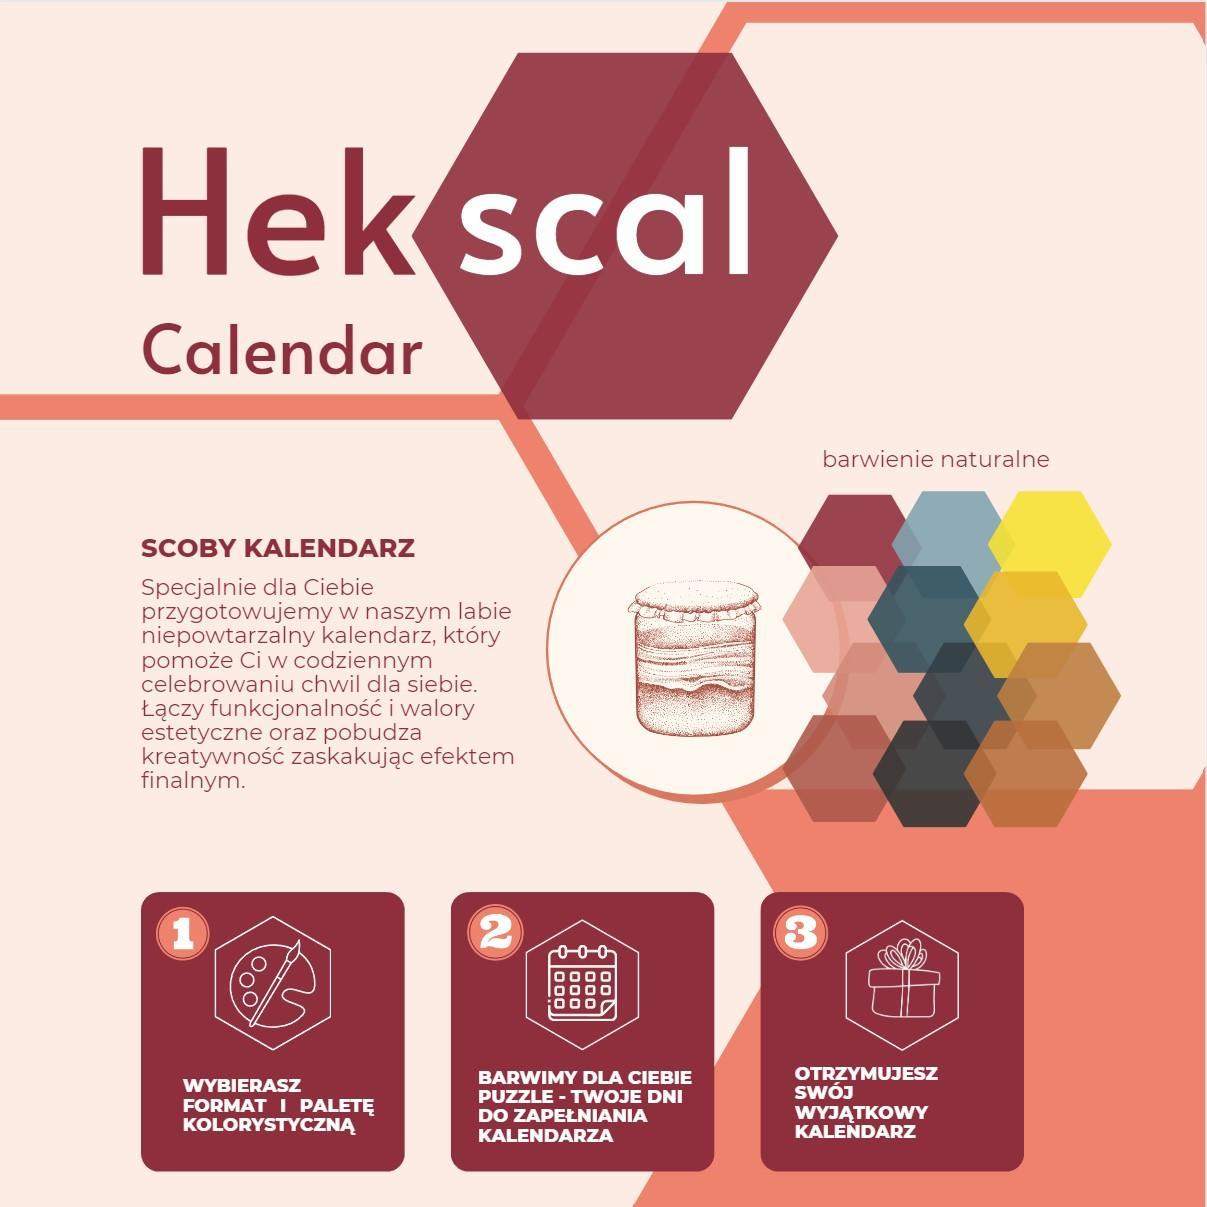 Infographic illustrating the Hekscal Calendar